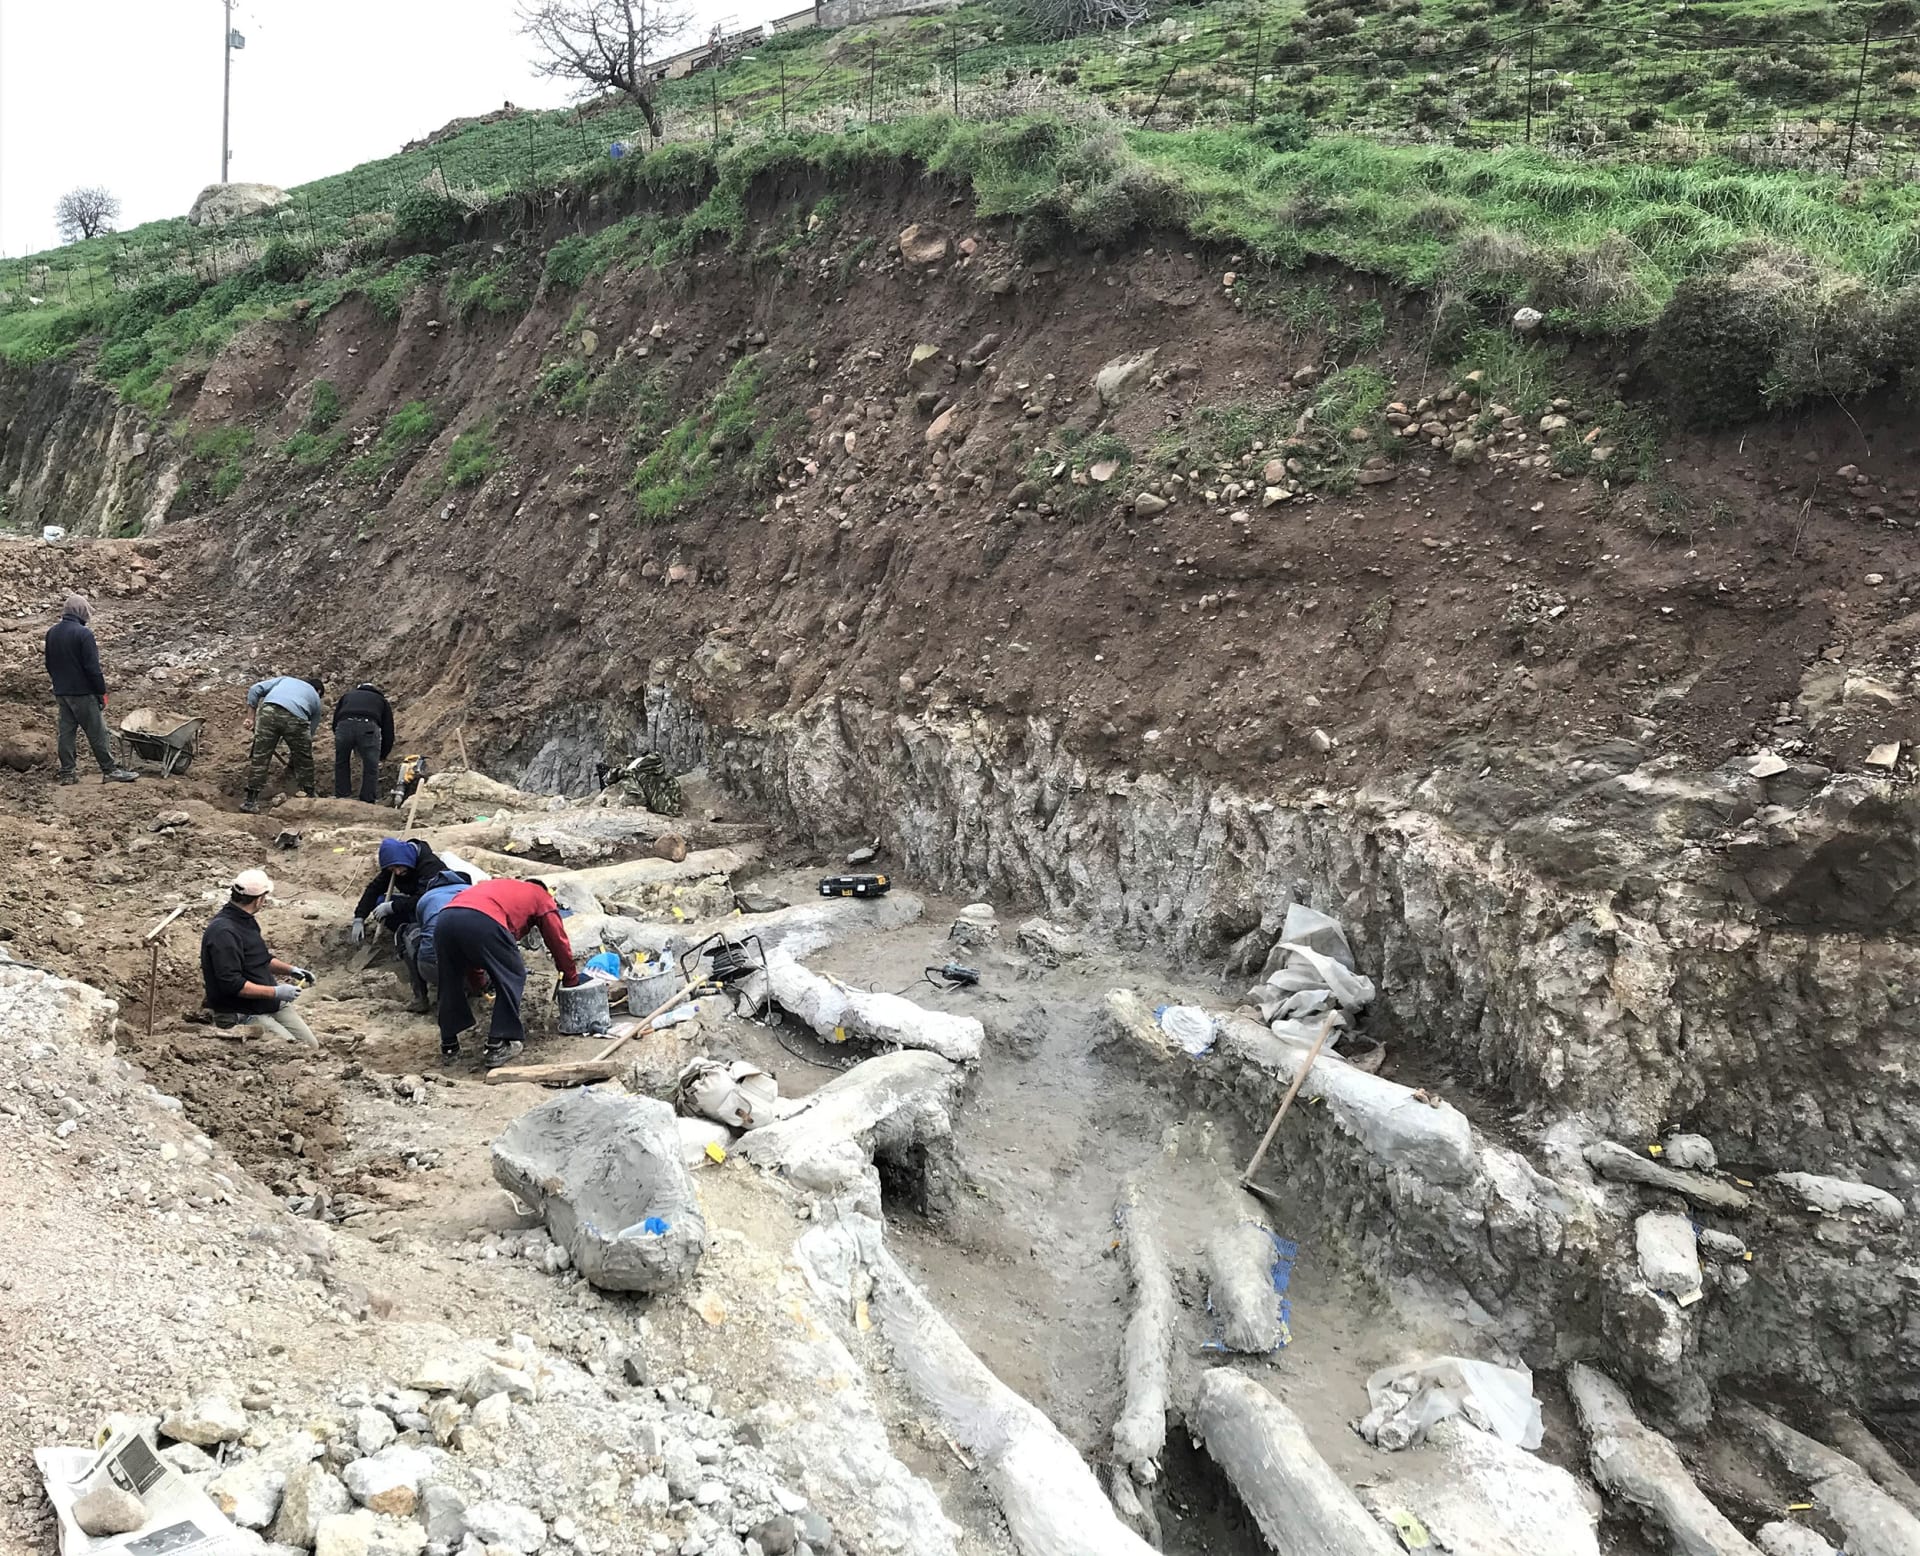 اكتشاف نادر.. العثور على شجرة متحجرة كاملة عمرها 20 مليون عام في جزيرة ليسبوس اليونانية